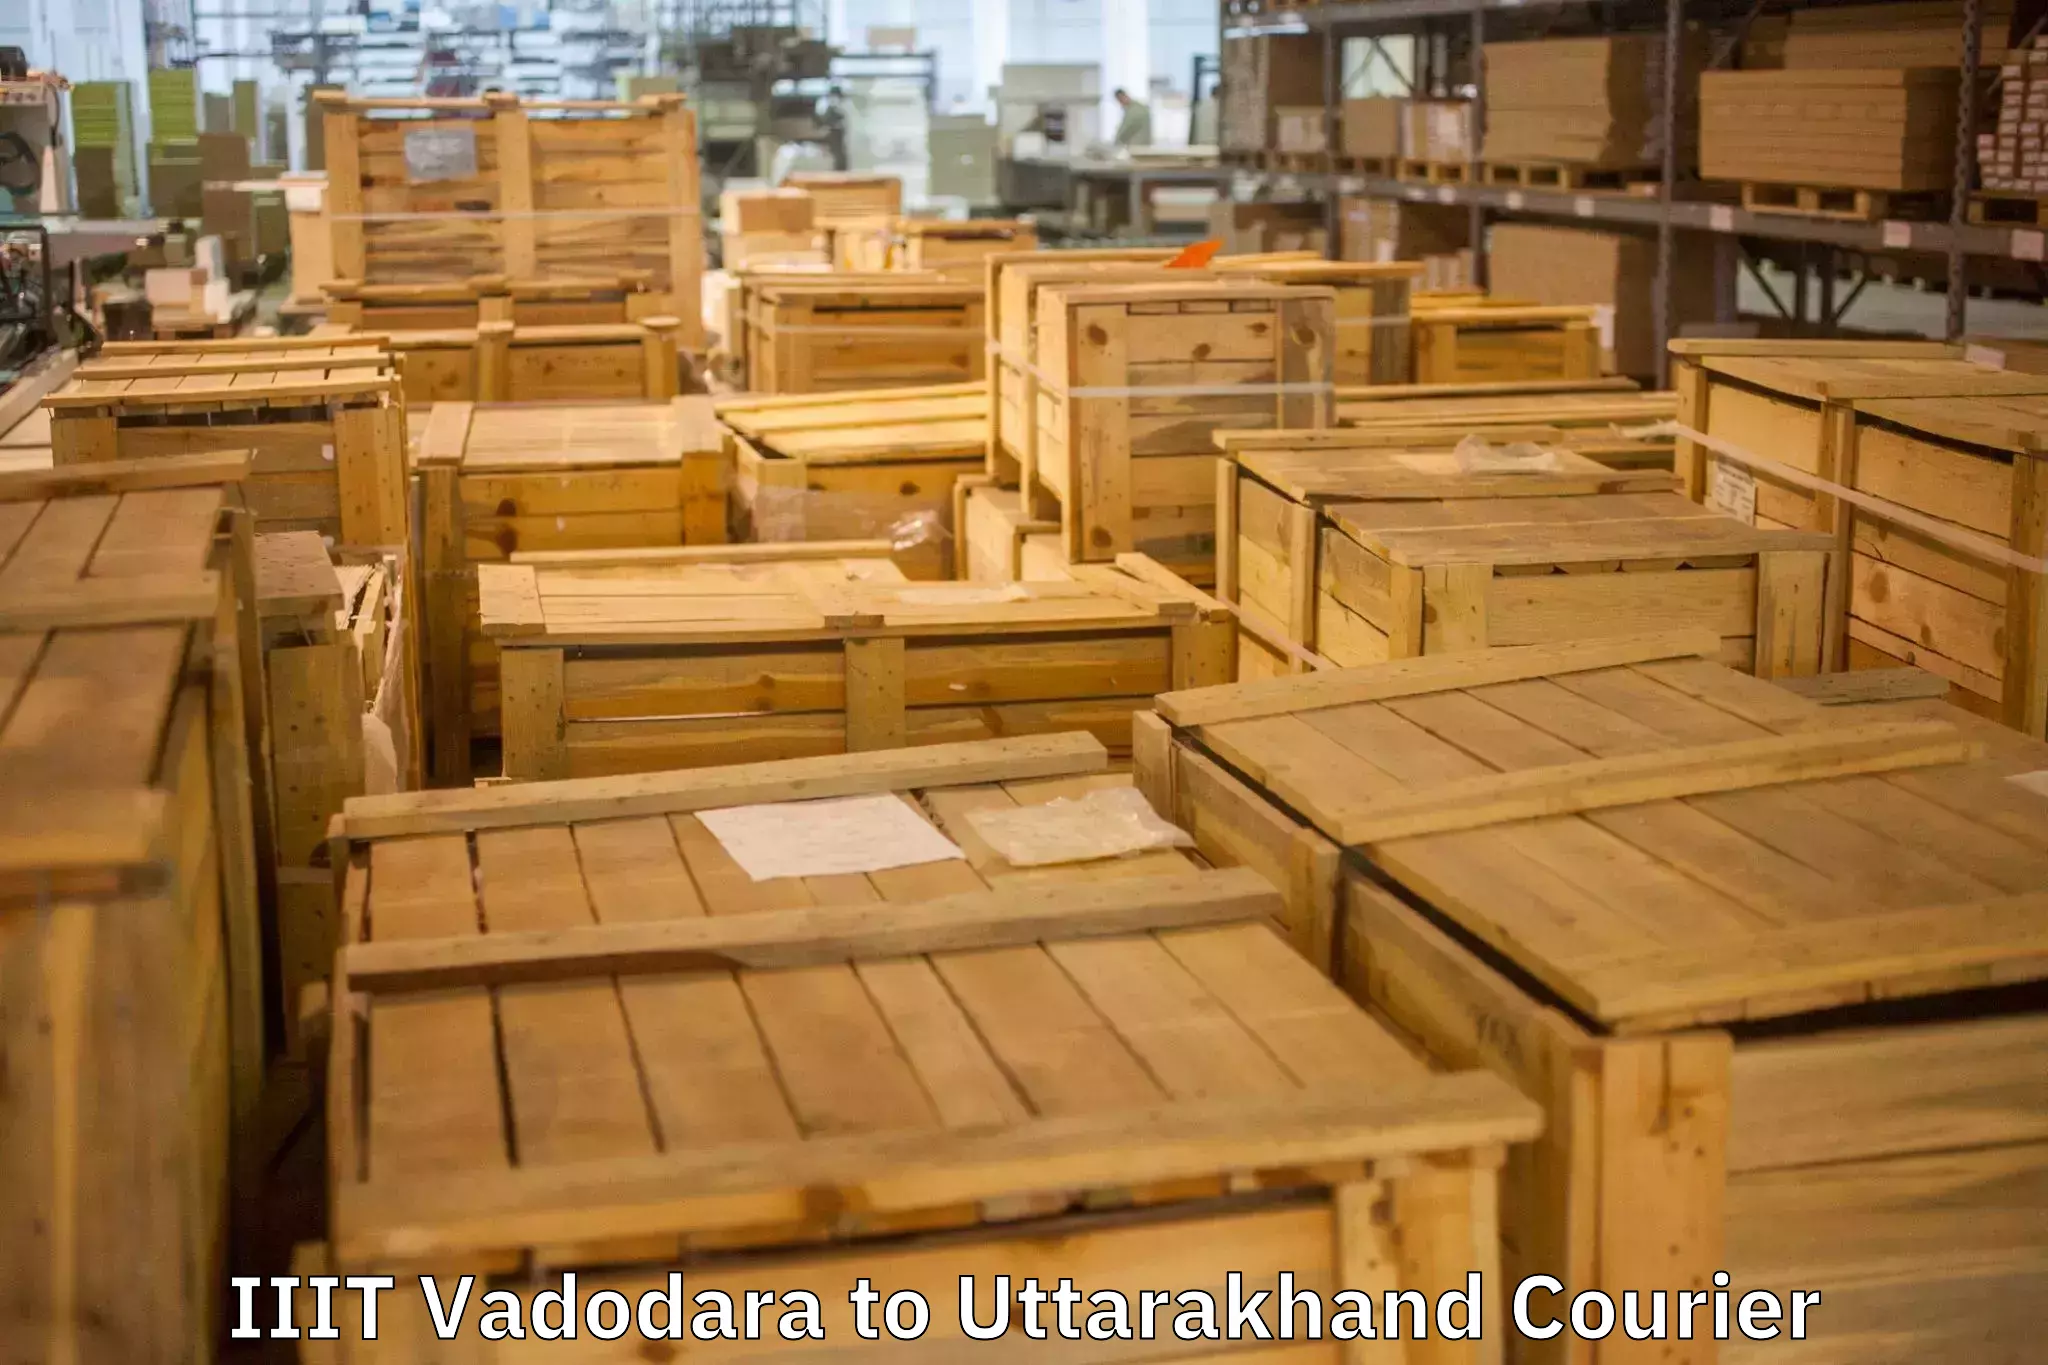 Door-to-door relocation services IIIT Vadodara to Rudraprayag